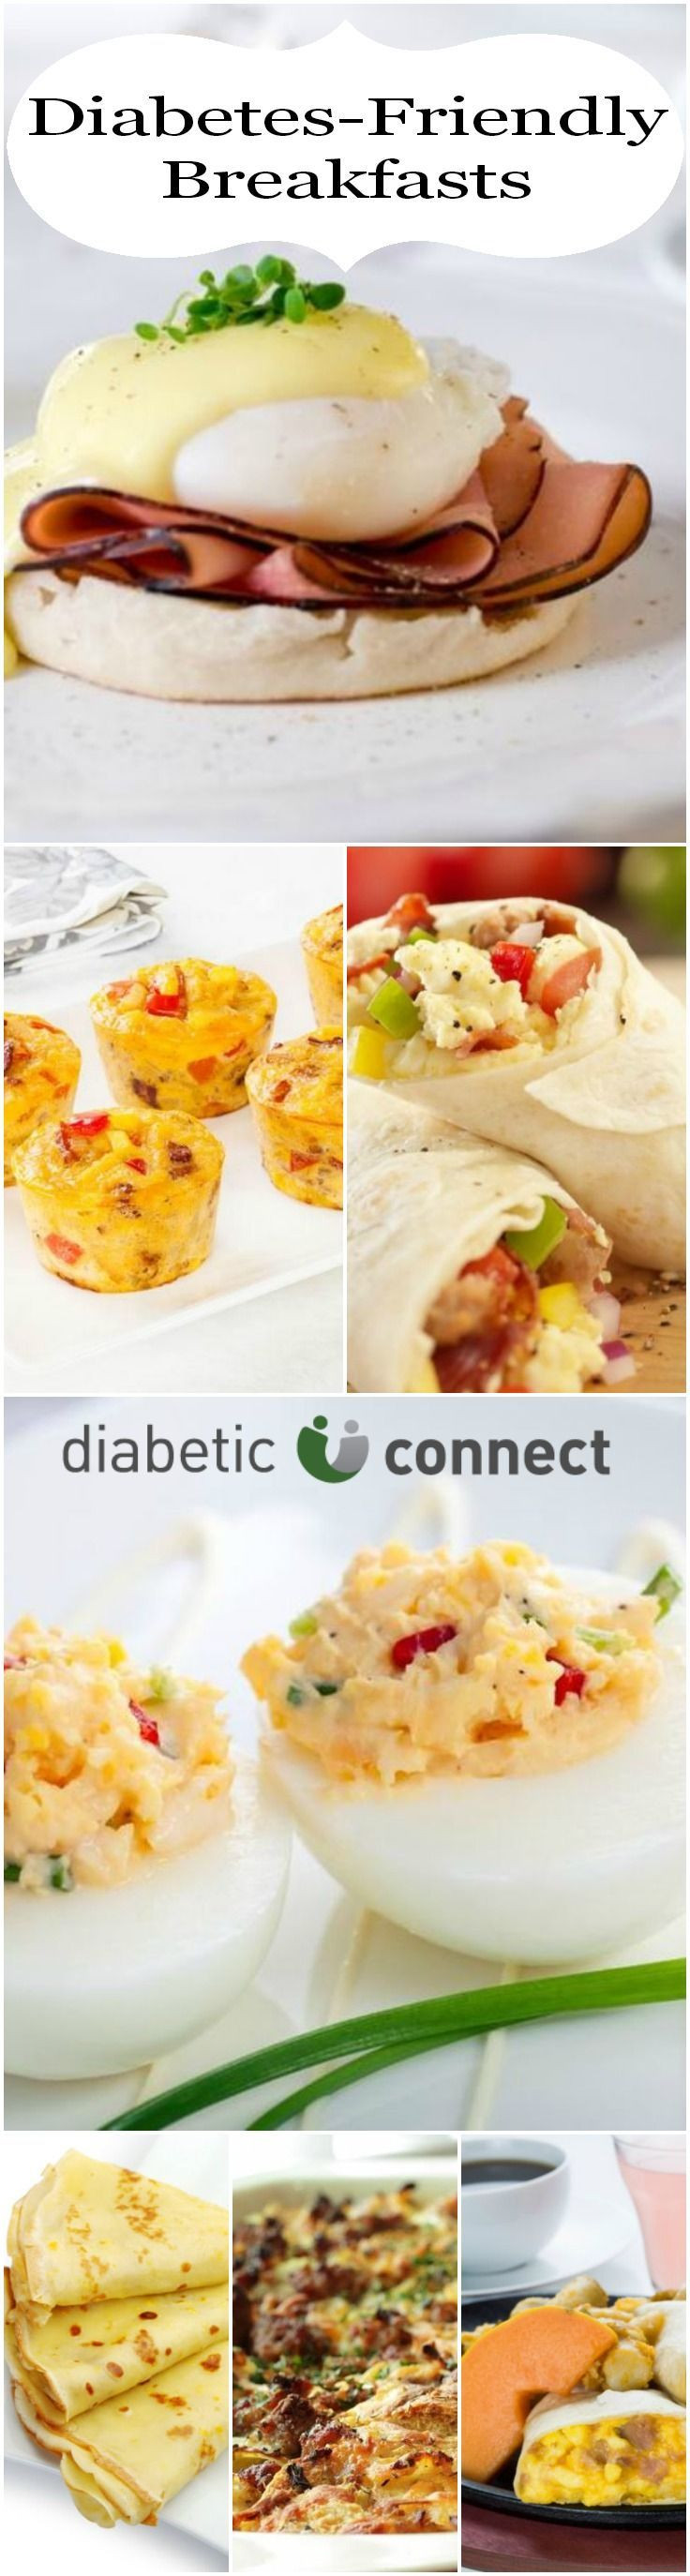 Diabetic Dinners Ideas
 Diabetic breakfast ideas